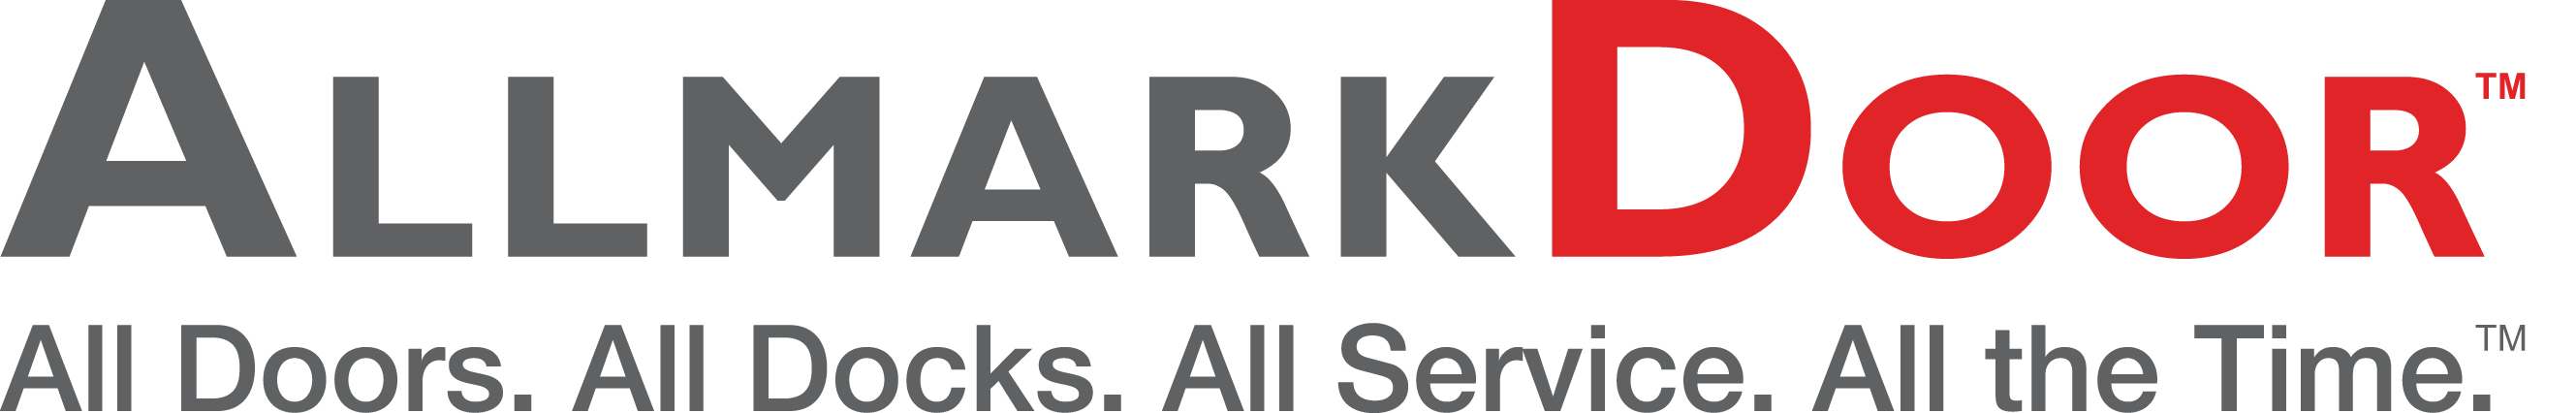 Allmark Door logo